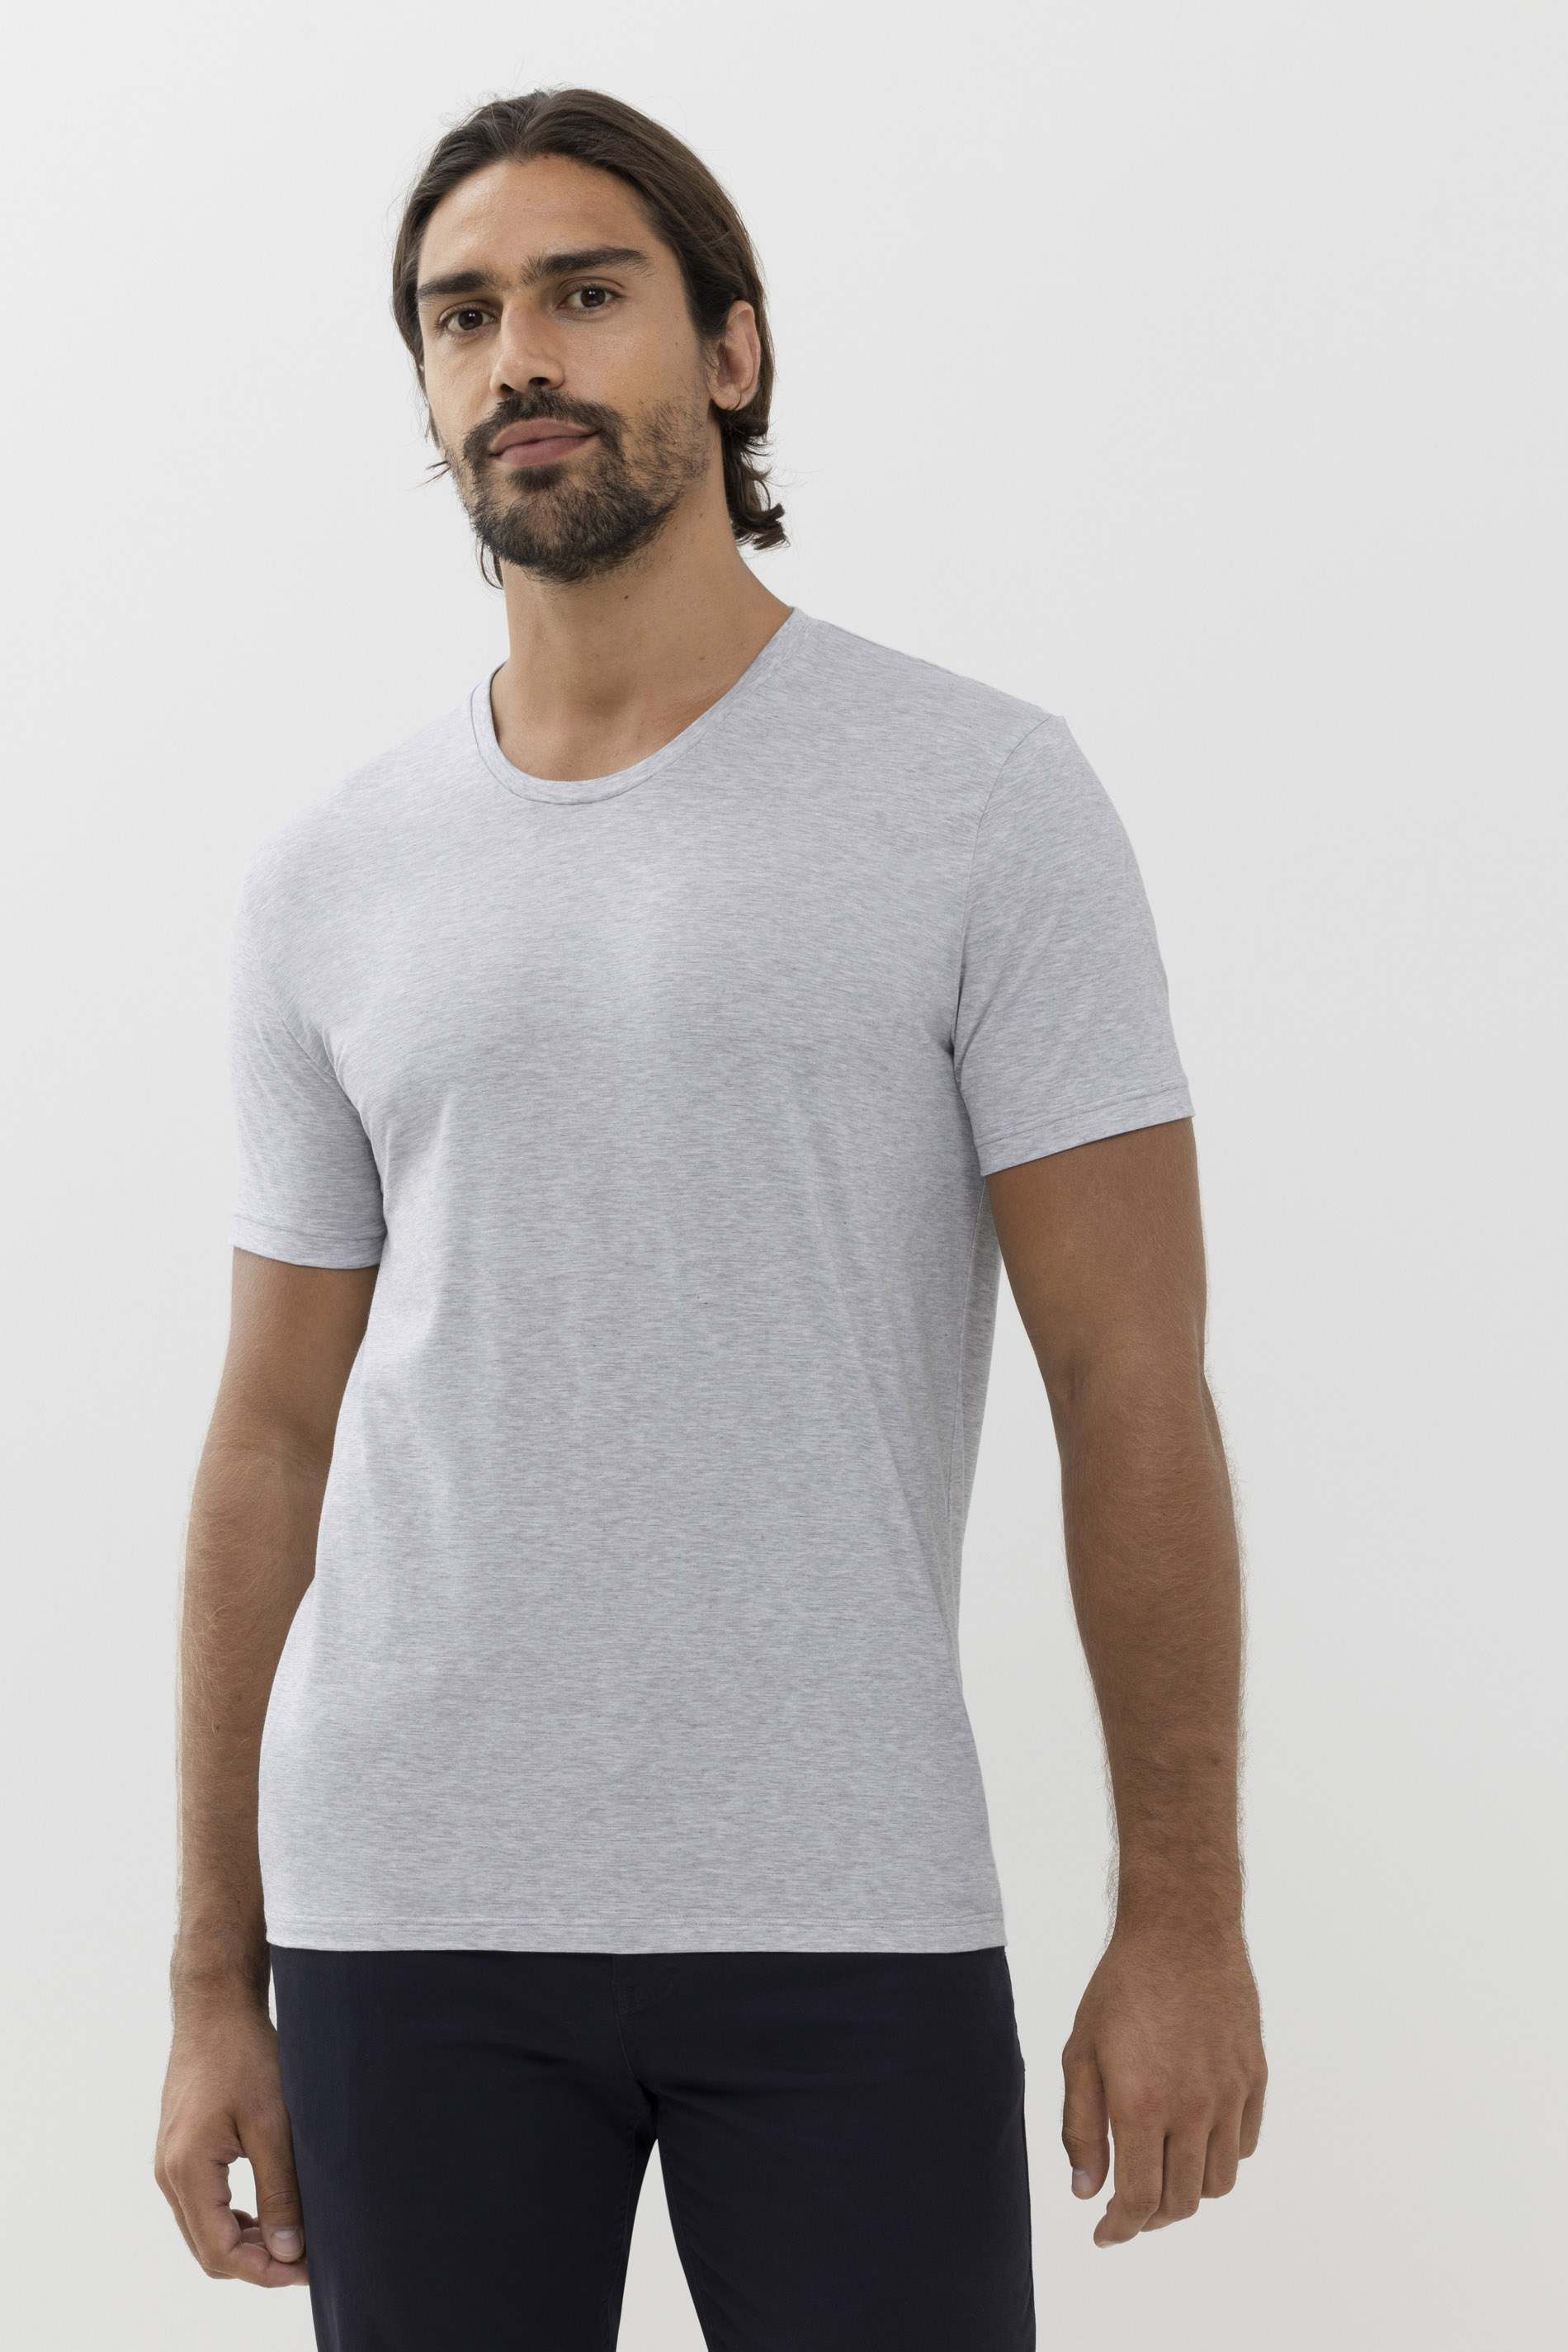 T-shirt Dry Cotton Colour Front View | mey®